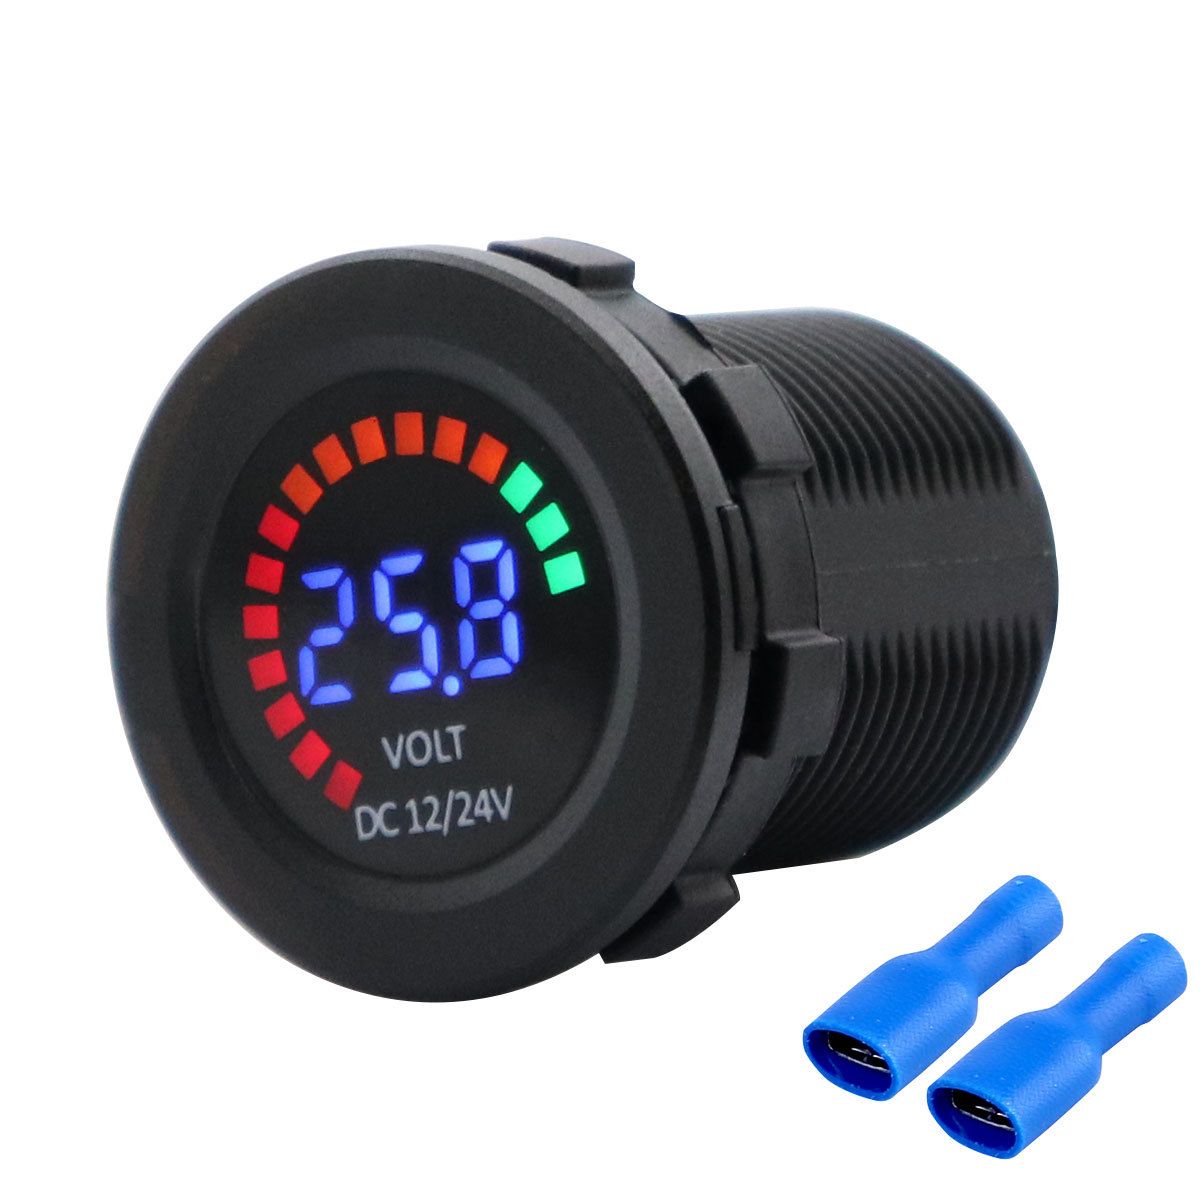 1224V-Digital-Voltmeter-Voltage-Volt-Meter-Gauge-LED-Color-Screen-Low-Voltage-Alarm-For-Car-Boat-Mot-1726311